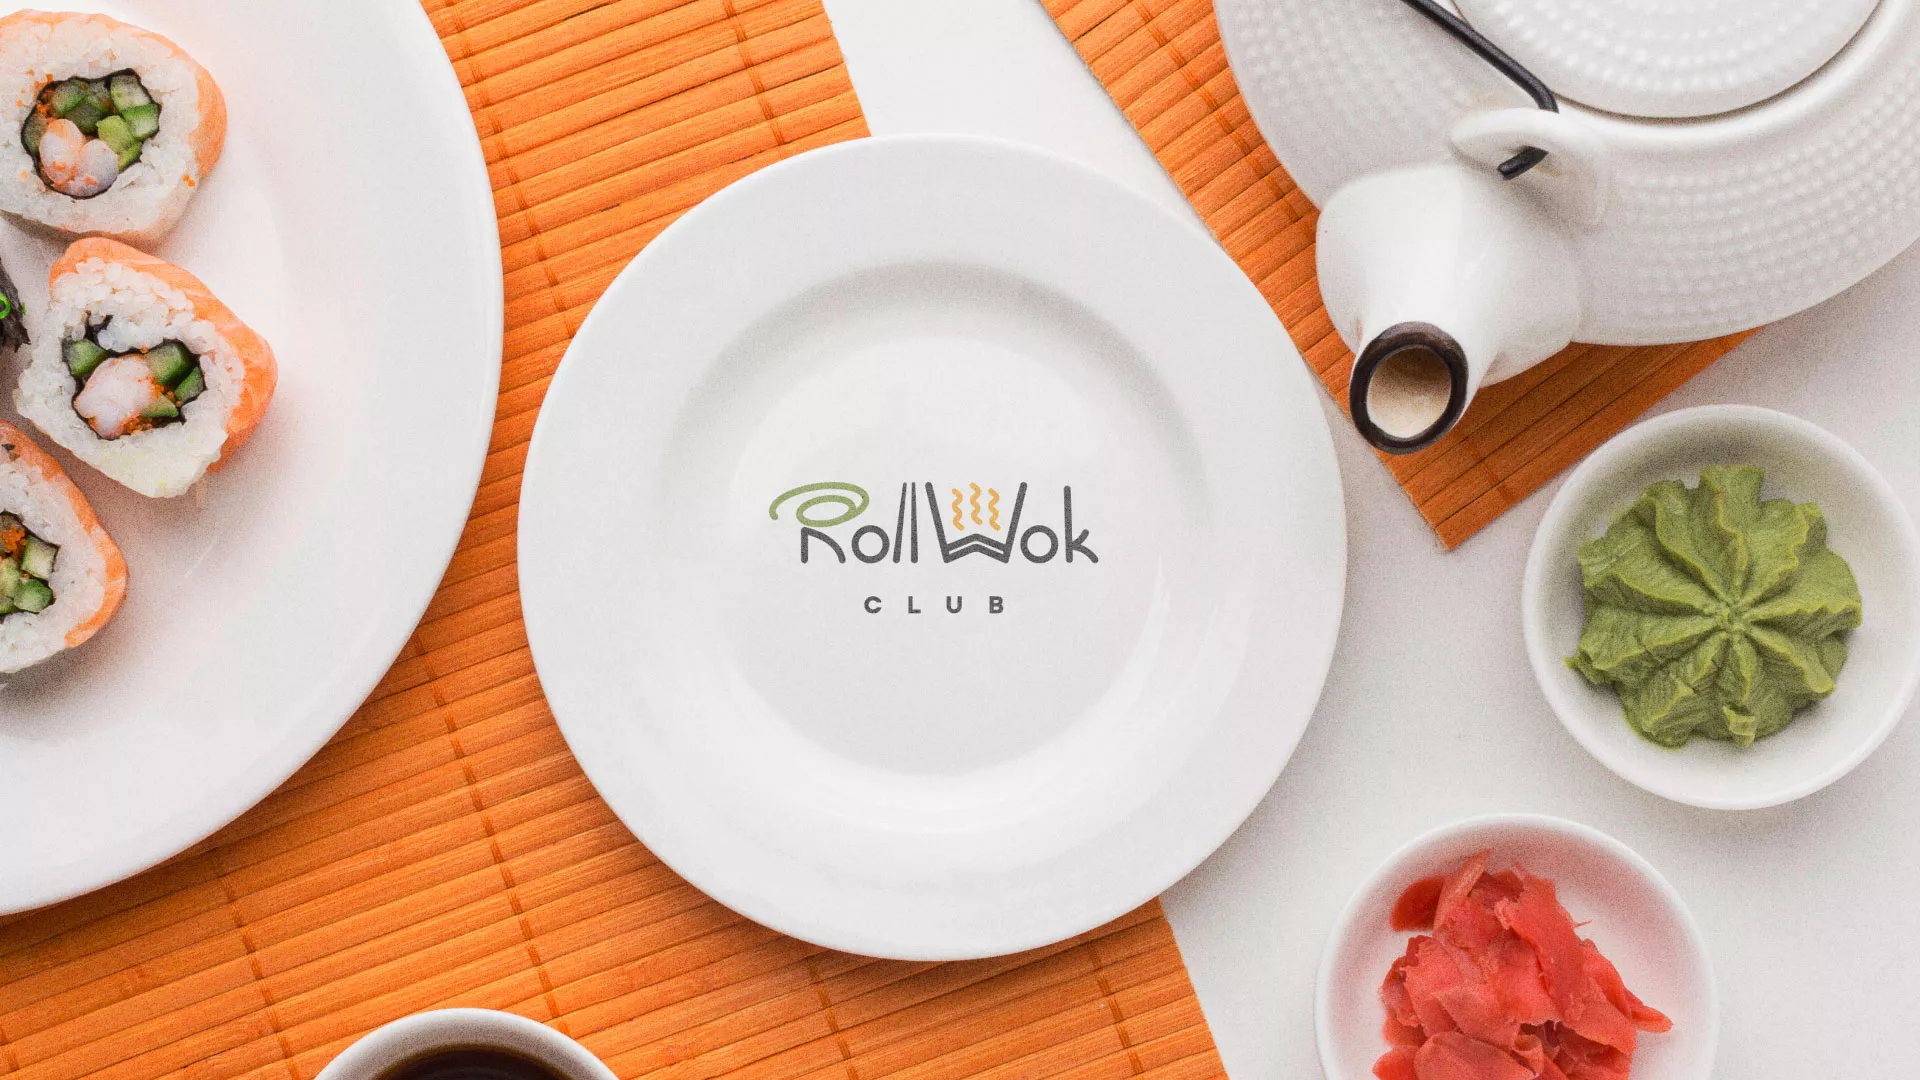 Разработка логотипа и фирменного стиля суши-бара «Roll Wok Club» в Катав-Ивановске